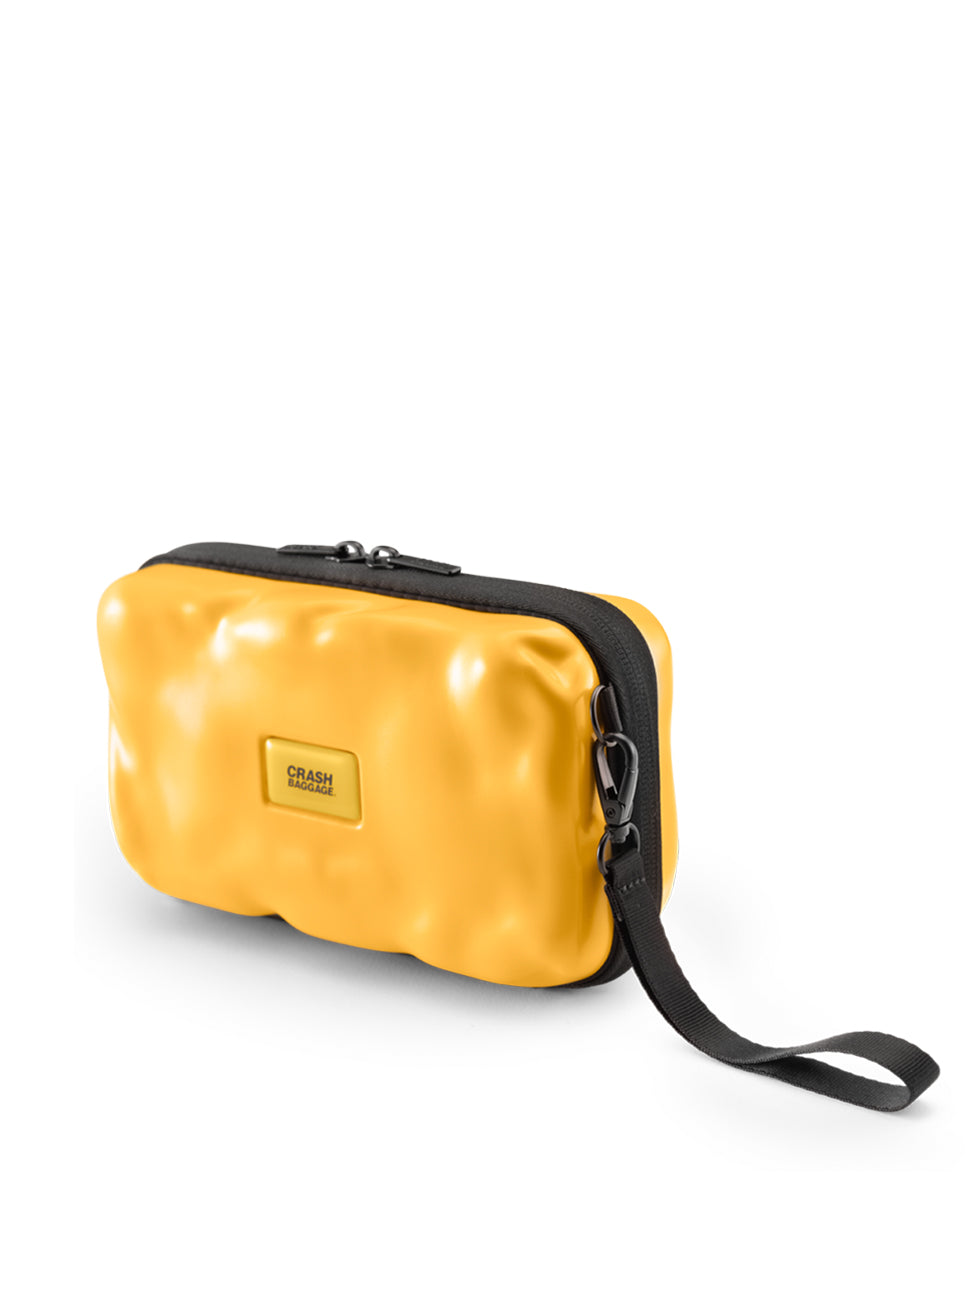 Crash Baggage Mini Icon Pochette Travel Pouch, CB370 004, Yellow